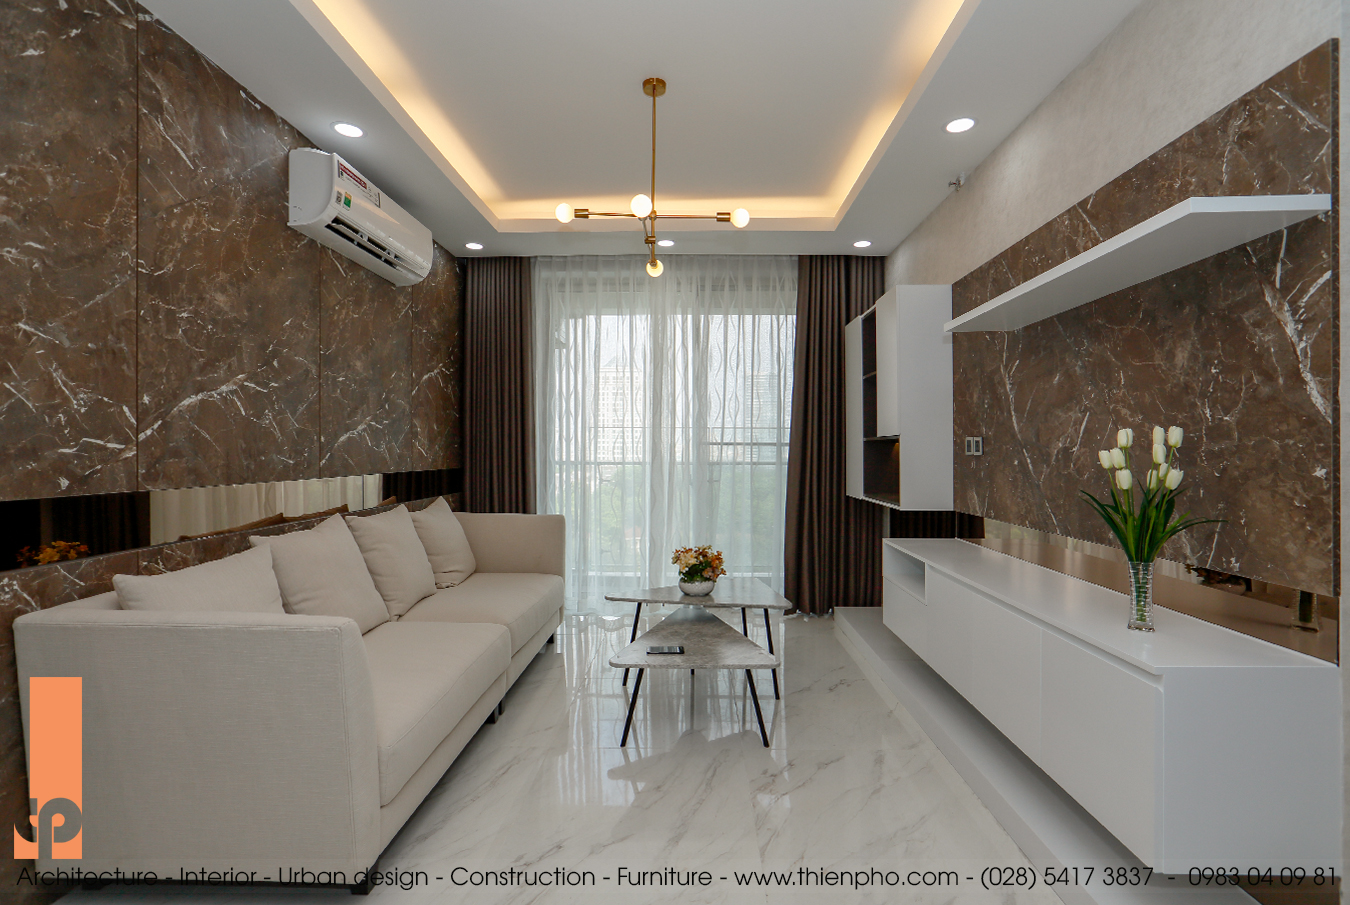 Hình ảnh thi công hoàn thiện nội thất căn hộ A7-14 Midtown, Phú Mỹ Hưng